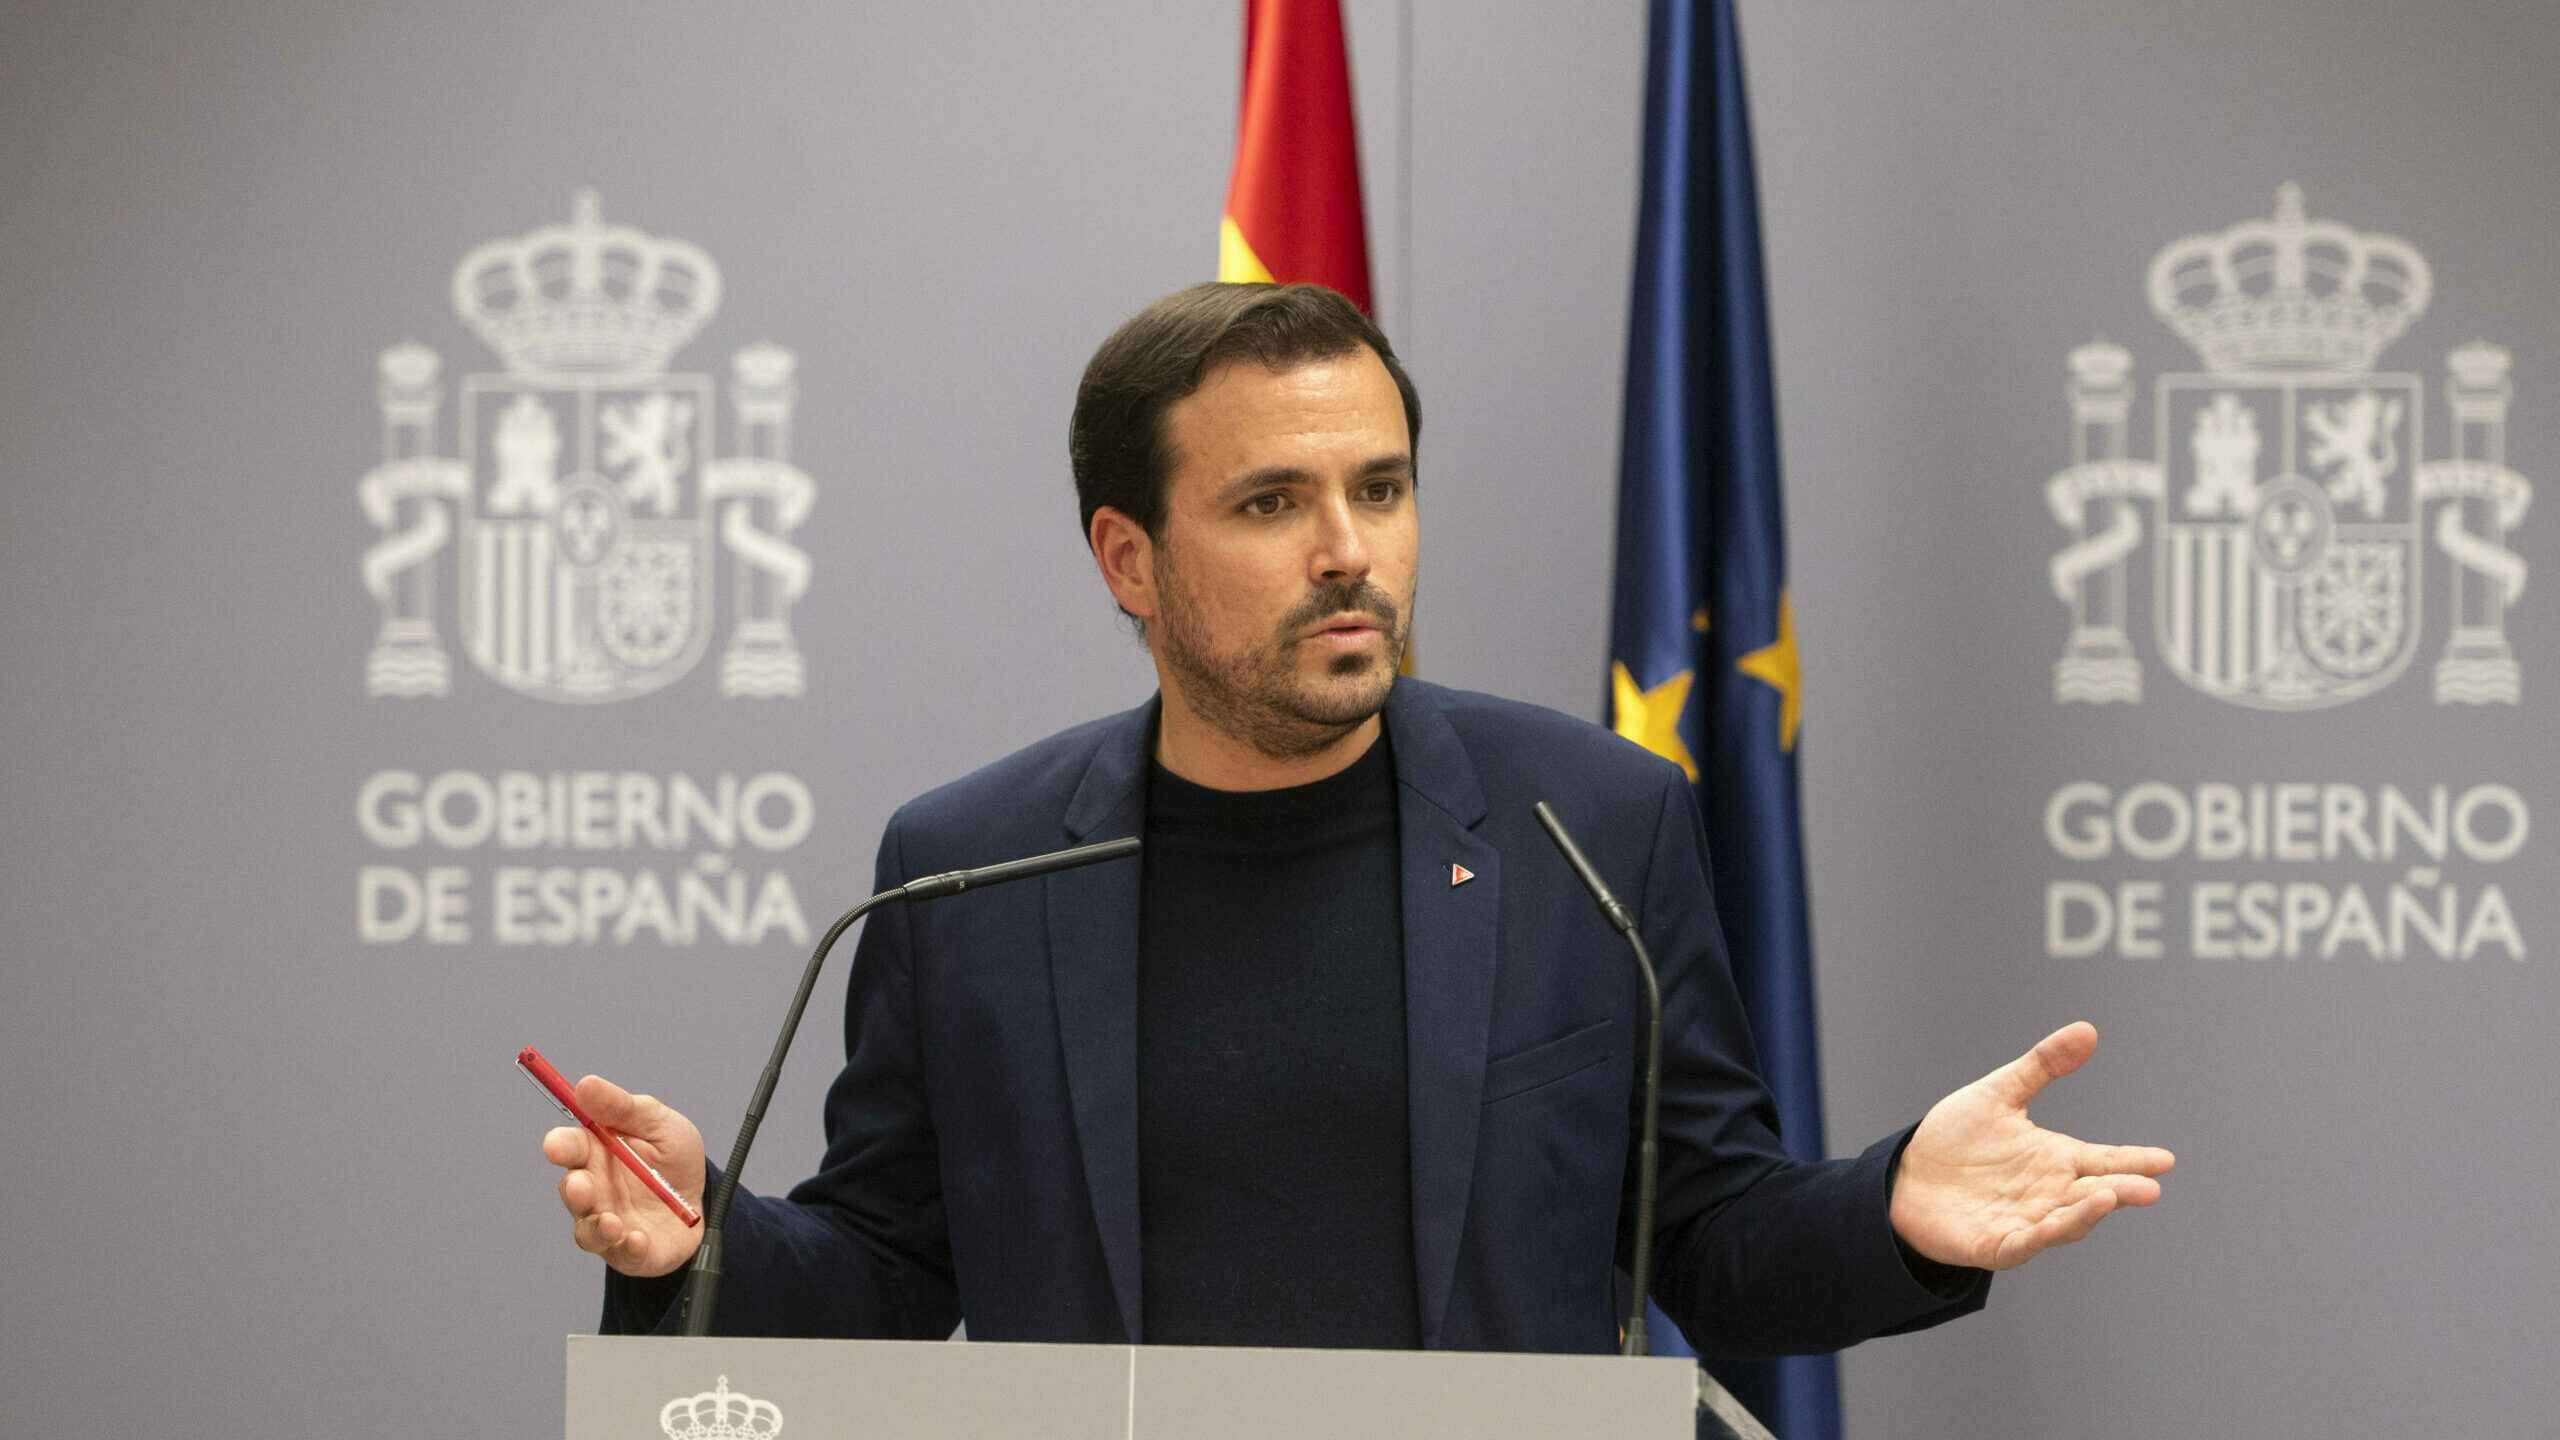 Sánchez premia al ministerio de Garzón con un aumento del presupuesto del 46% en 2022